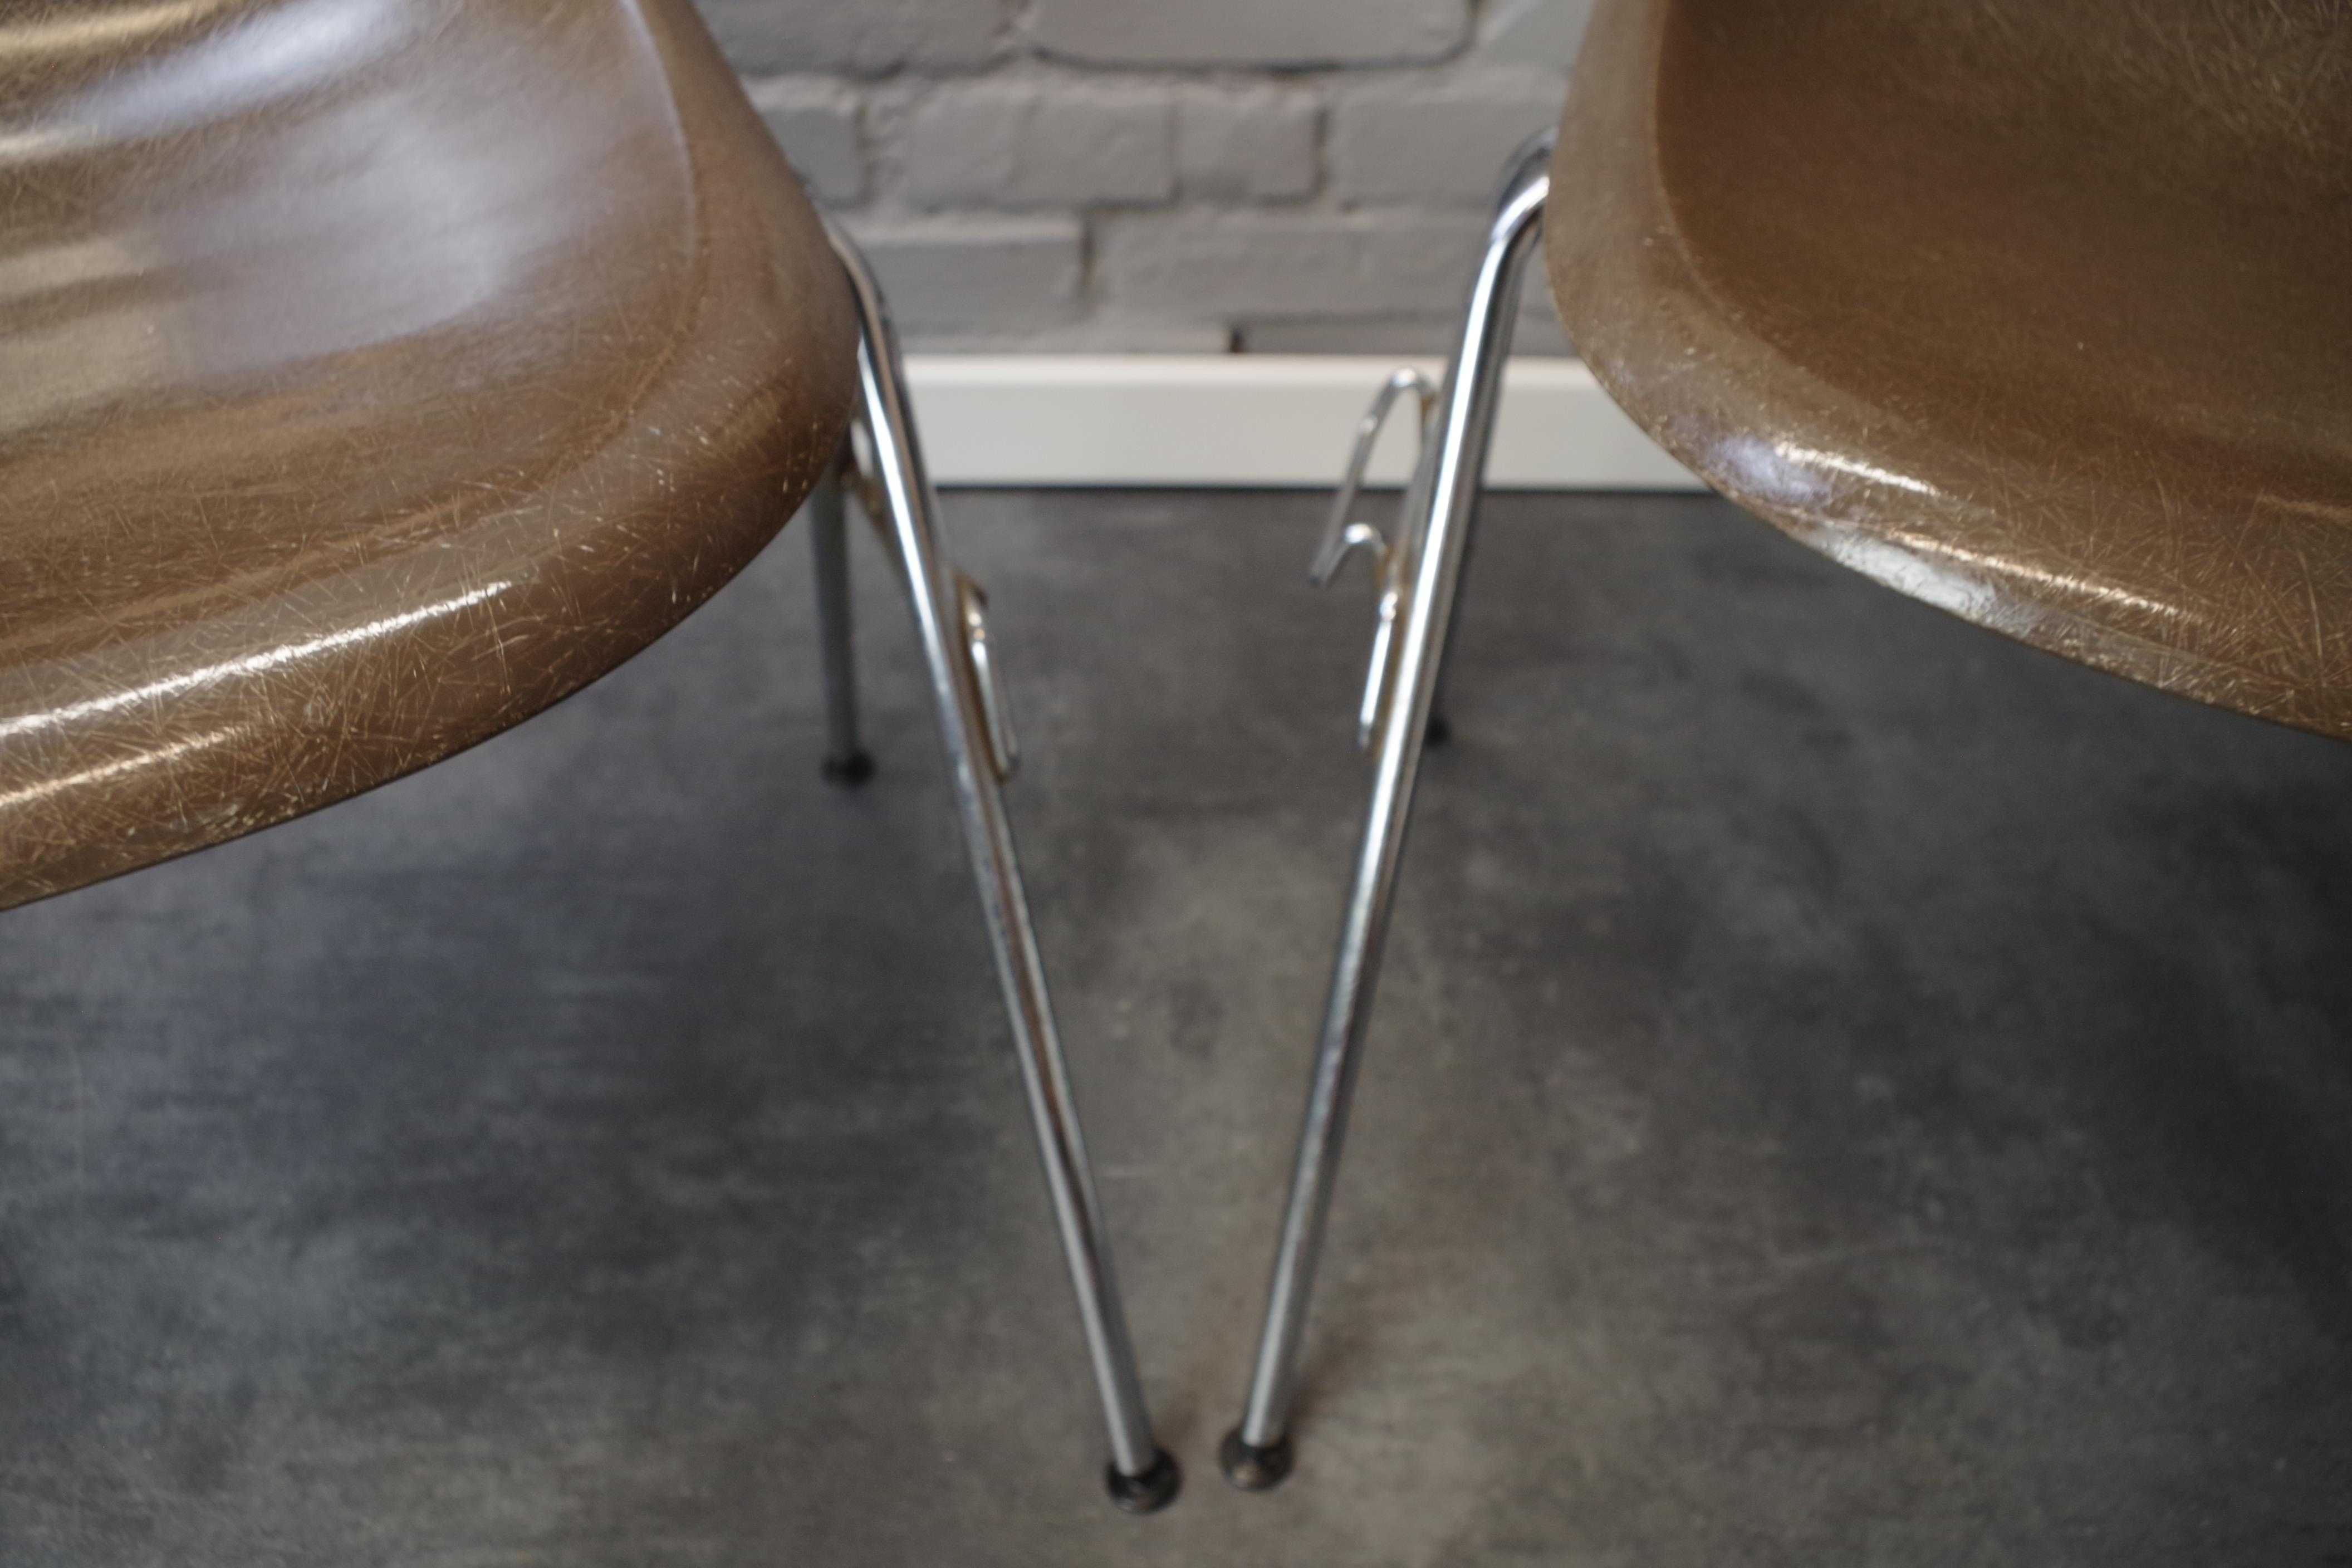 Krzesło z włókna szklanego Charles Eames dla Herman Miller